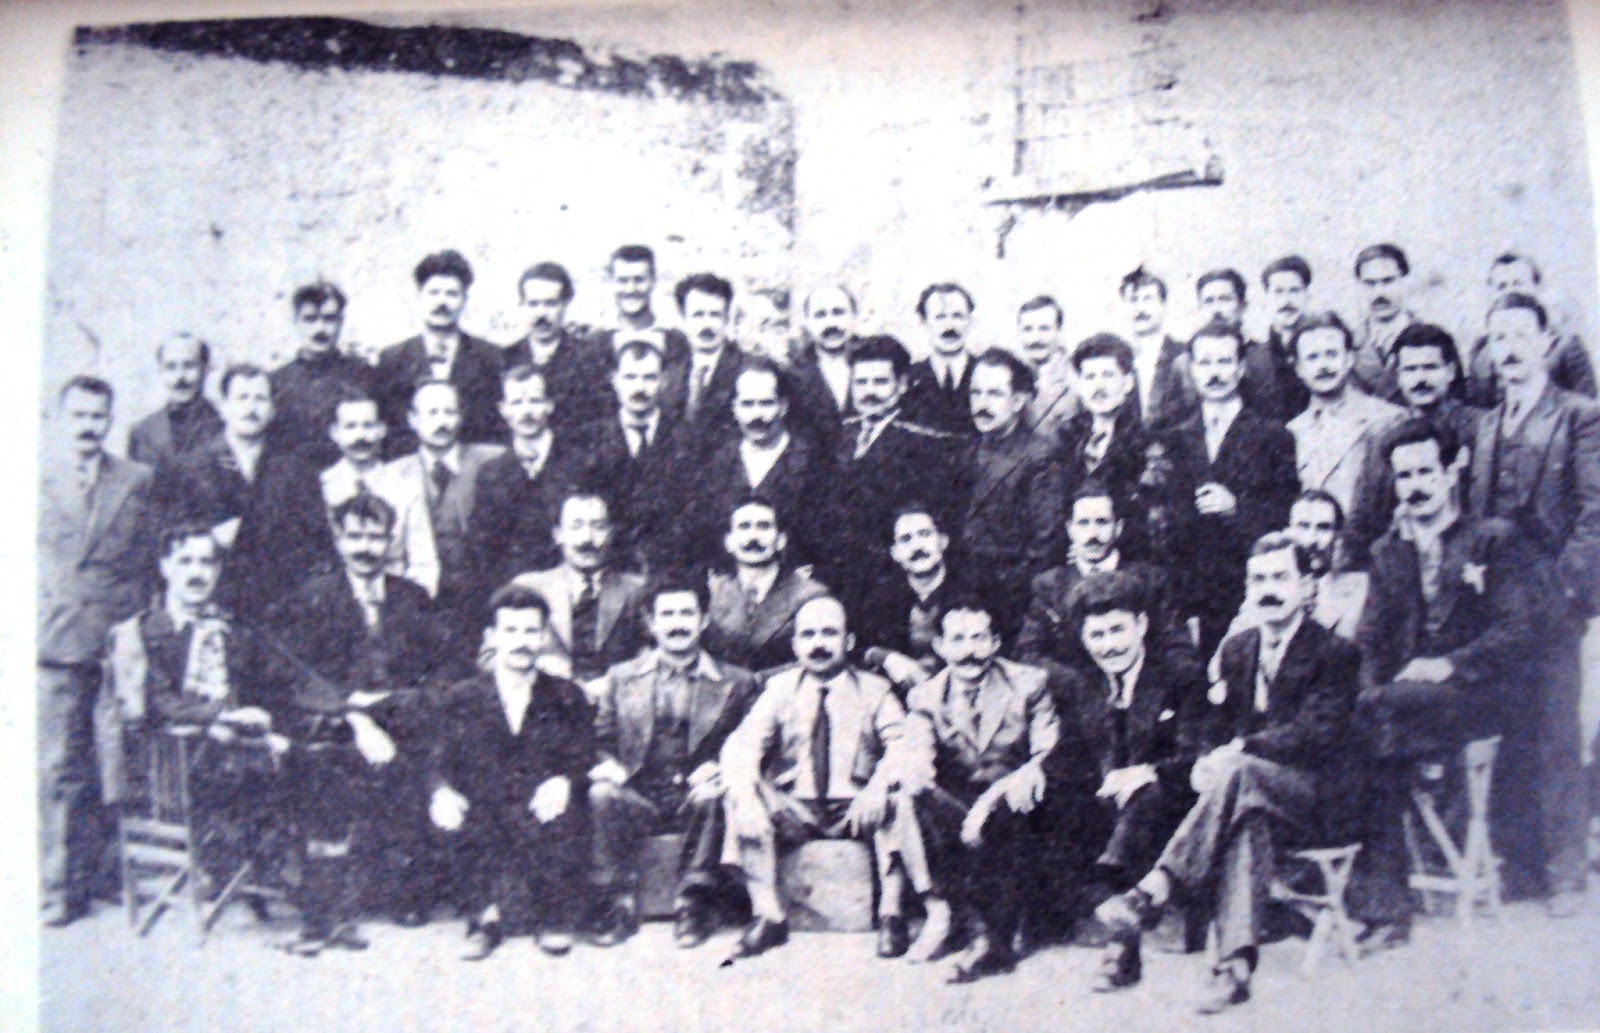 Ομάδα πολιτικών κρατούμενων που εργάζονταν στα συνεργεία της Ακροναυπλιάς. Πολλοί από αυτούς εκτελέστηκαν στην Κατοχή και τον Εμφύλιο